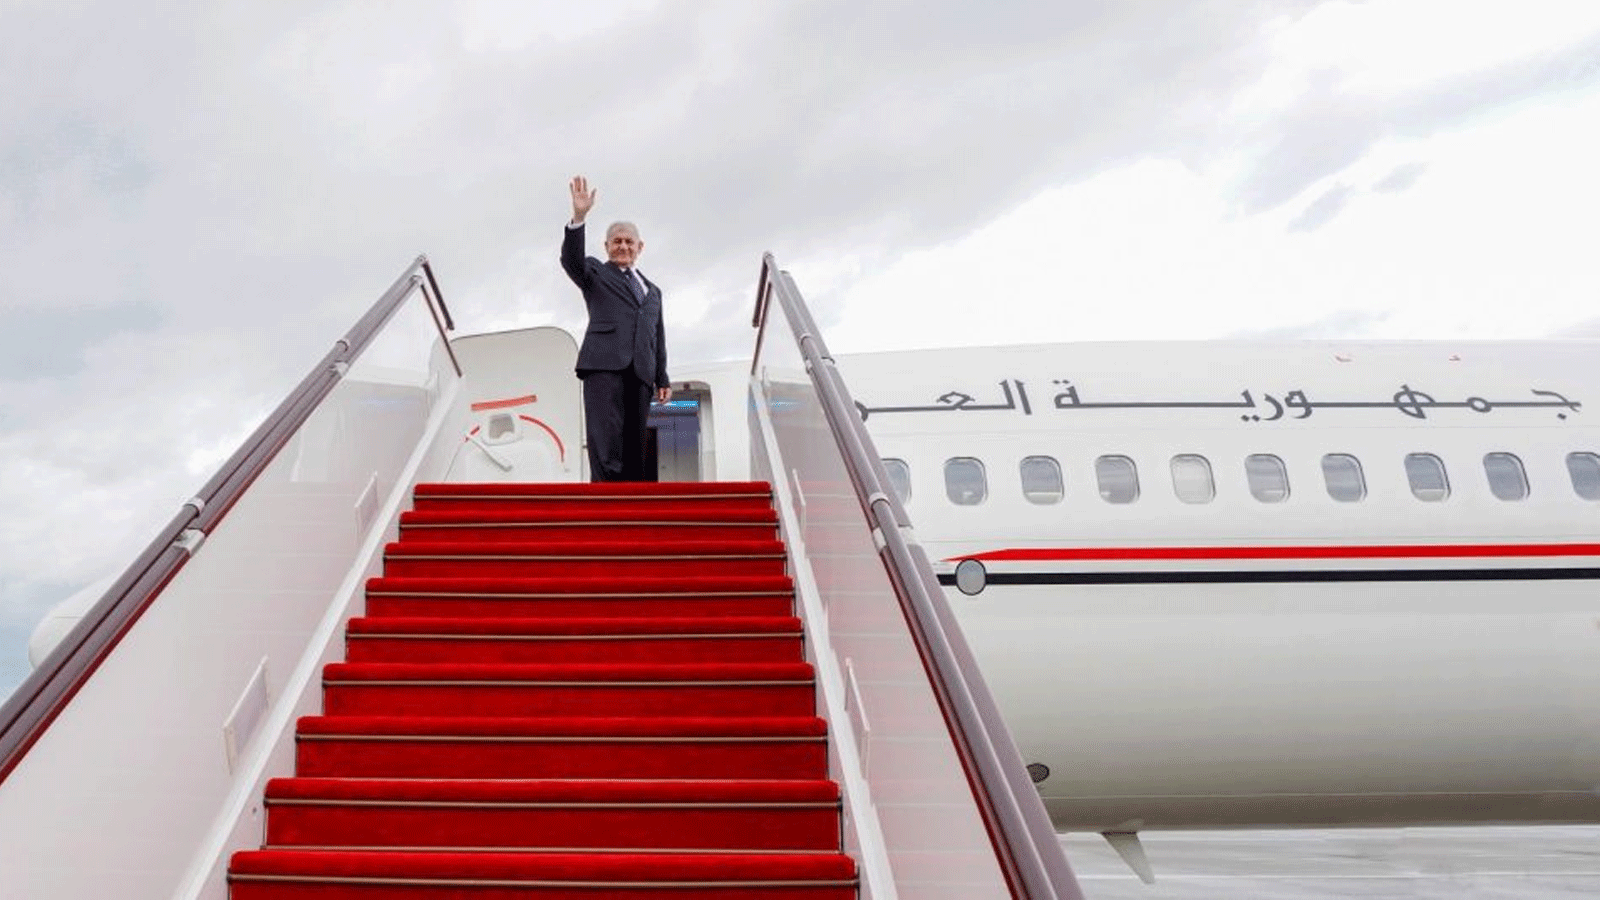 الرئيس العراقي عبداللطيف رشيد يتوجه إلى أرمينيا بعد أذربيجان